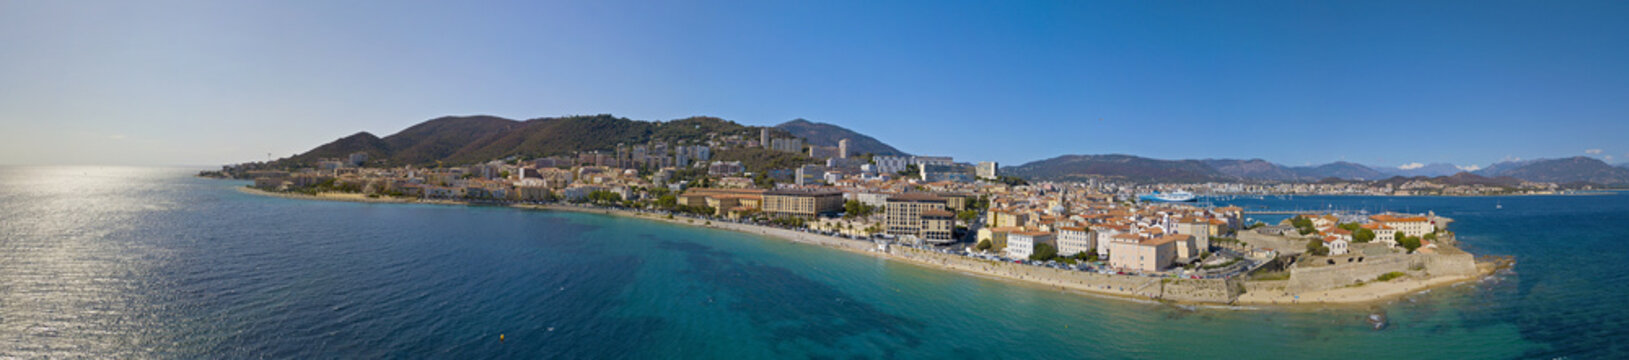 Vista aerea di Ajaccio, Corsica, Francia. L’area portuale ed il centro città visti dal mare. Porto barche e case